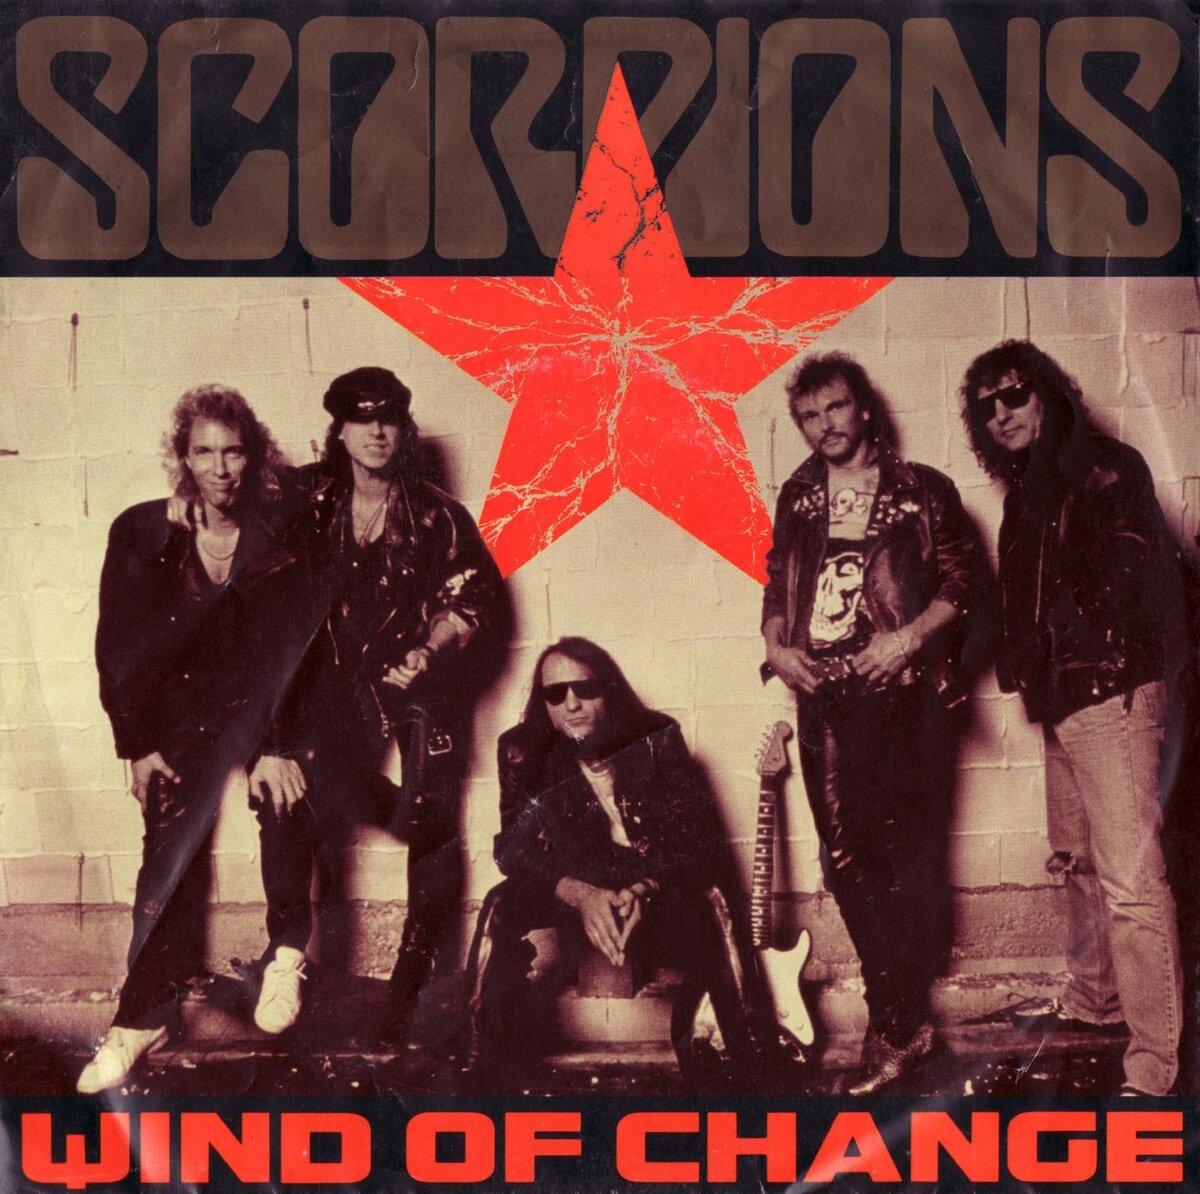 Скорпионс песня ветер. Scorpions Virgin Killer 1976 обложка. Scorpions 1975. Scorpions Wind of change обложка. Альбом Virgin Killer Scorpions.